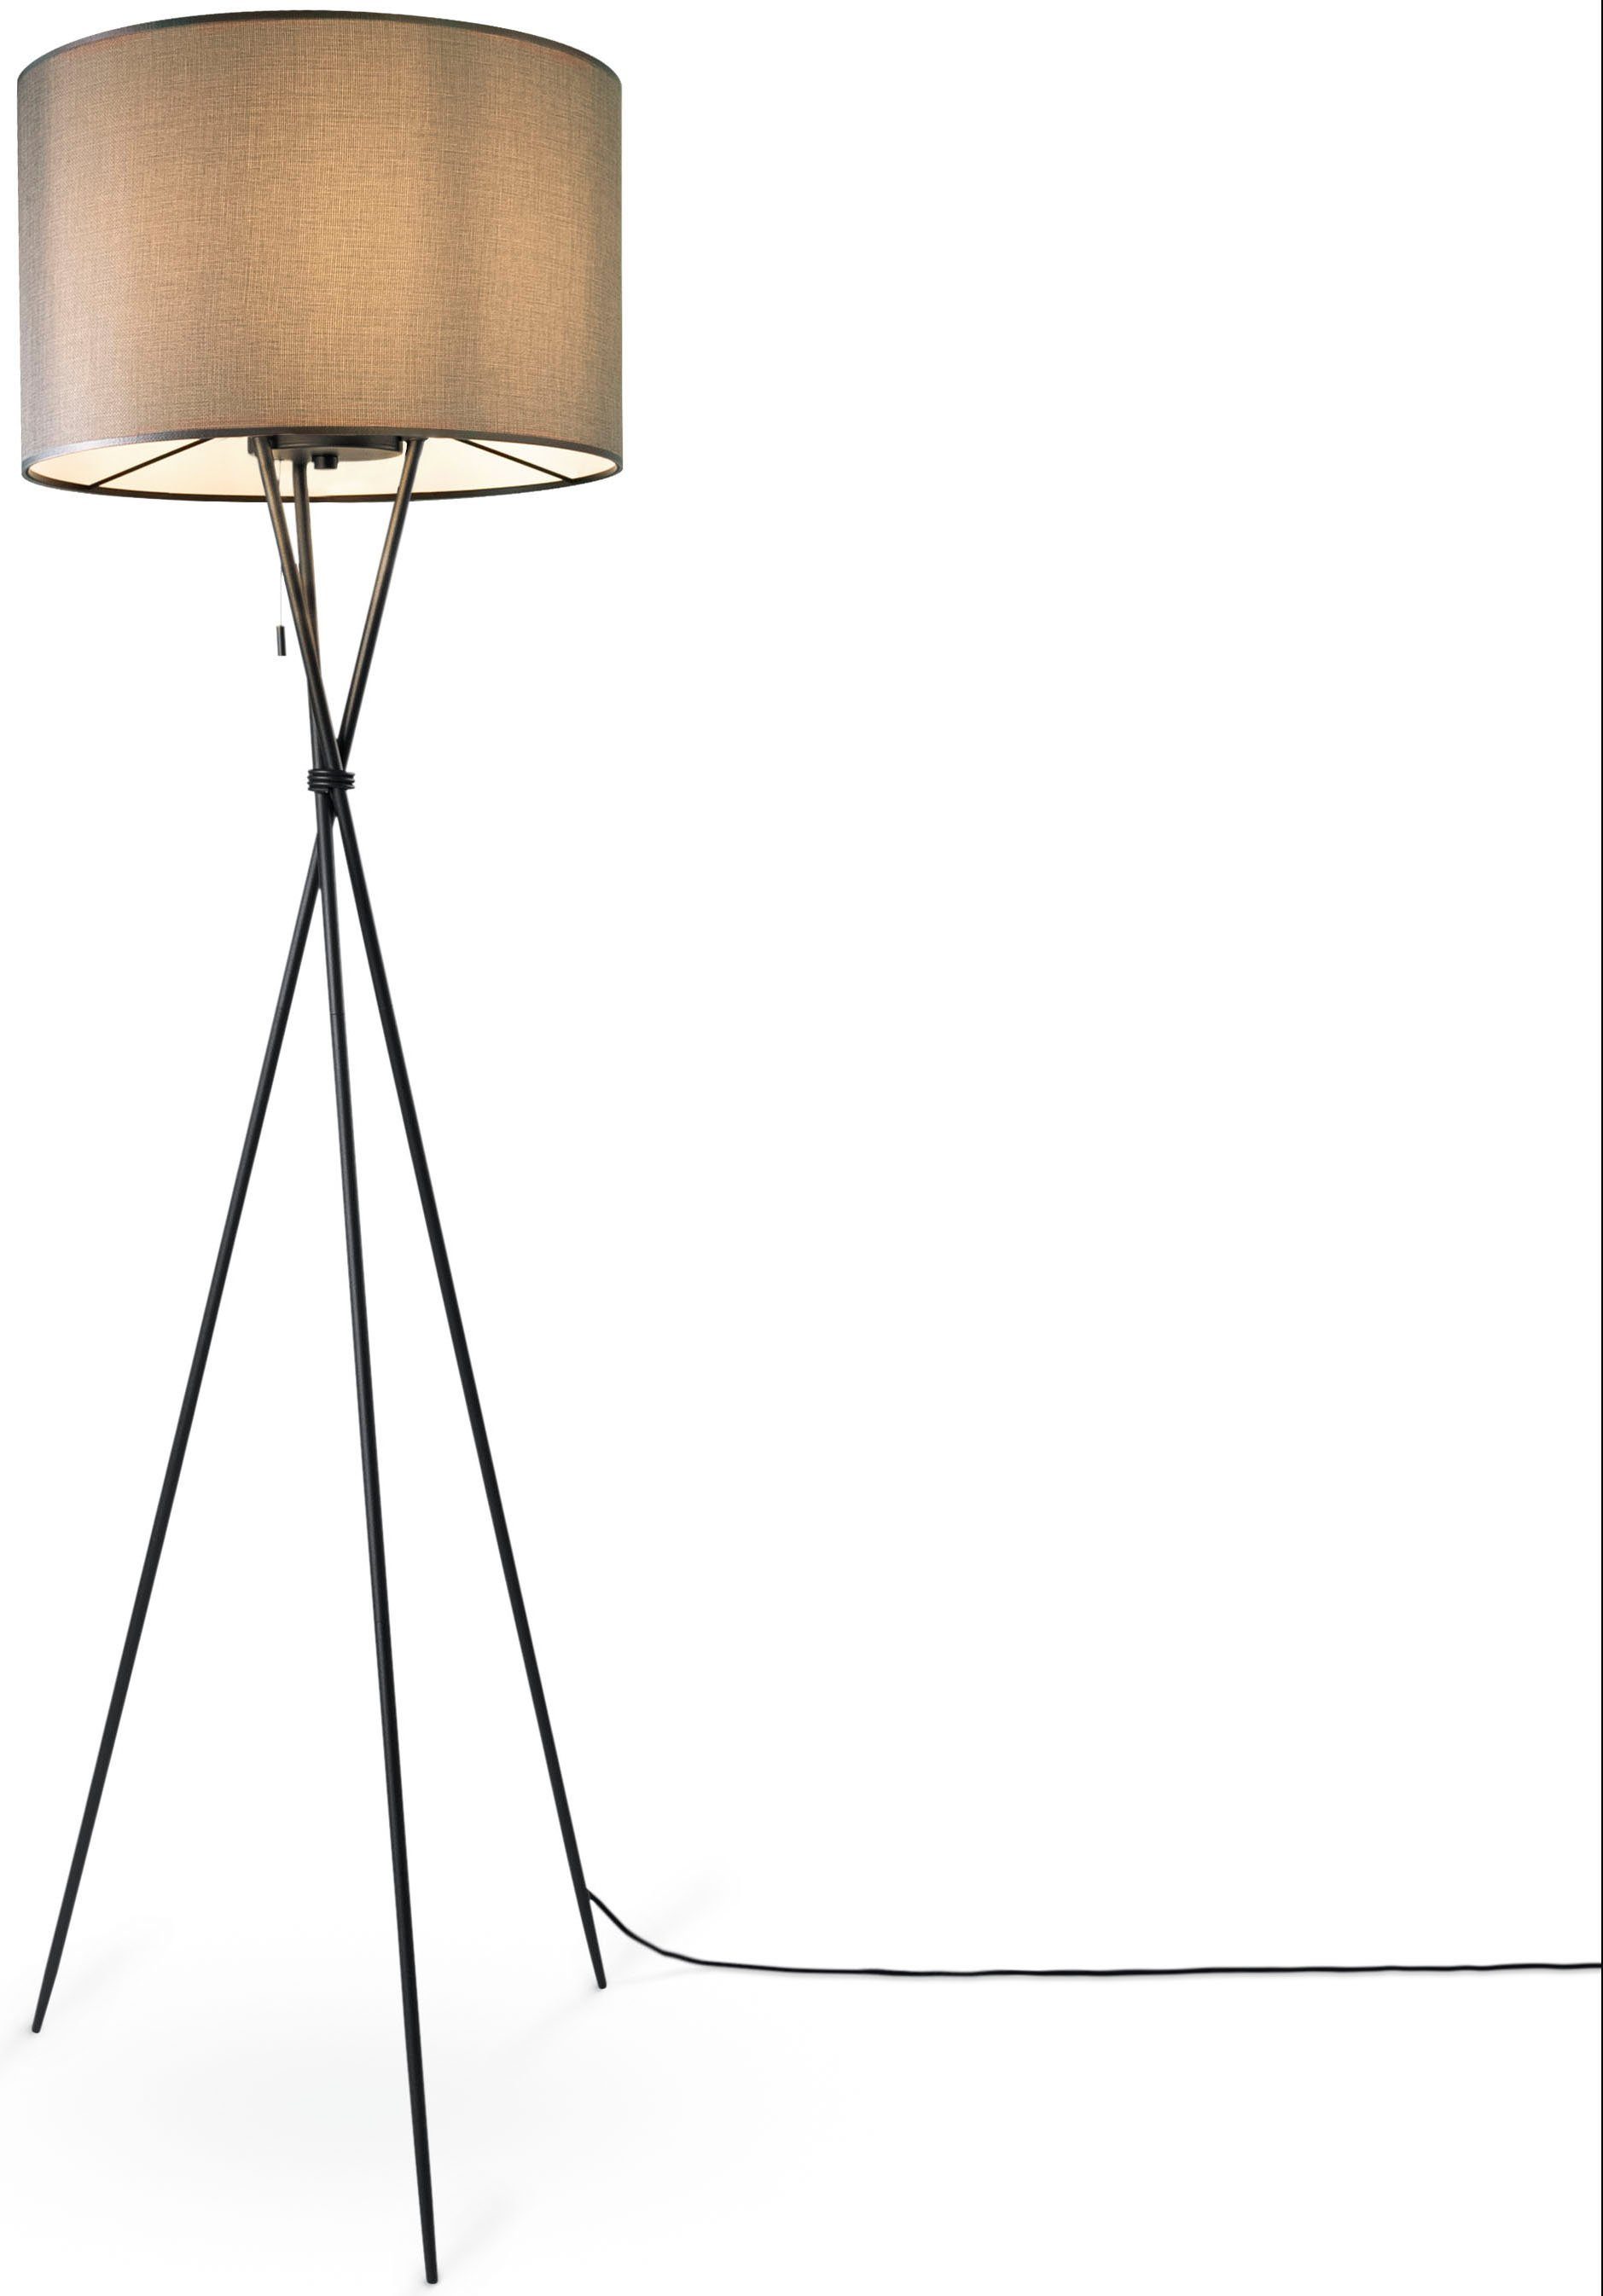 UNI Home Schirm Stoffschirmlampe E27 Standleuchte Dreibein ohne Leuchtmittel, grau COLOR, schwarz KATE Stehlampe Paco Textil Wohnzimmer CANVAS